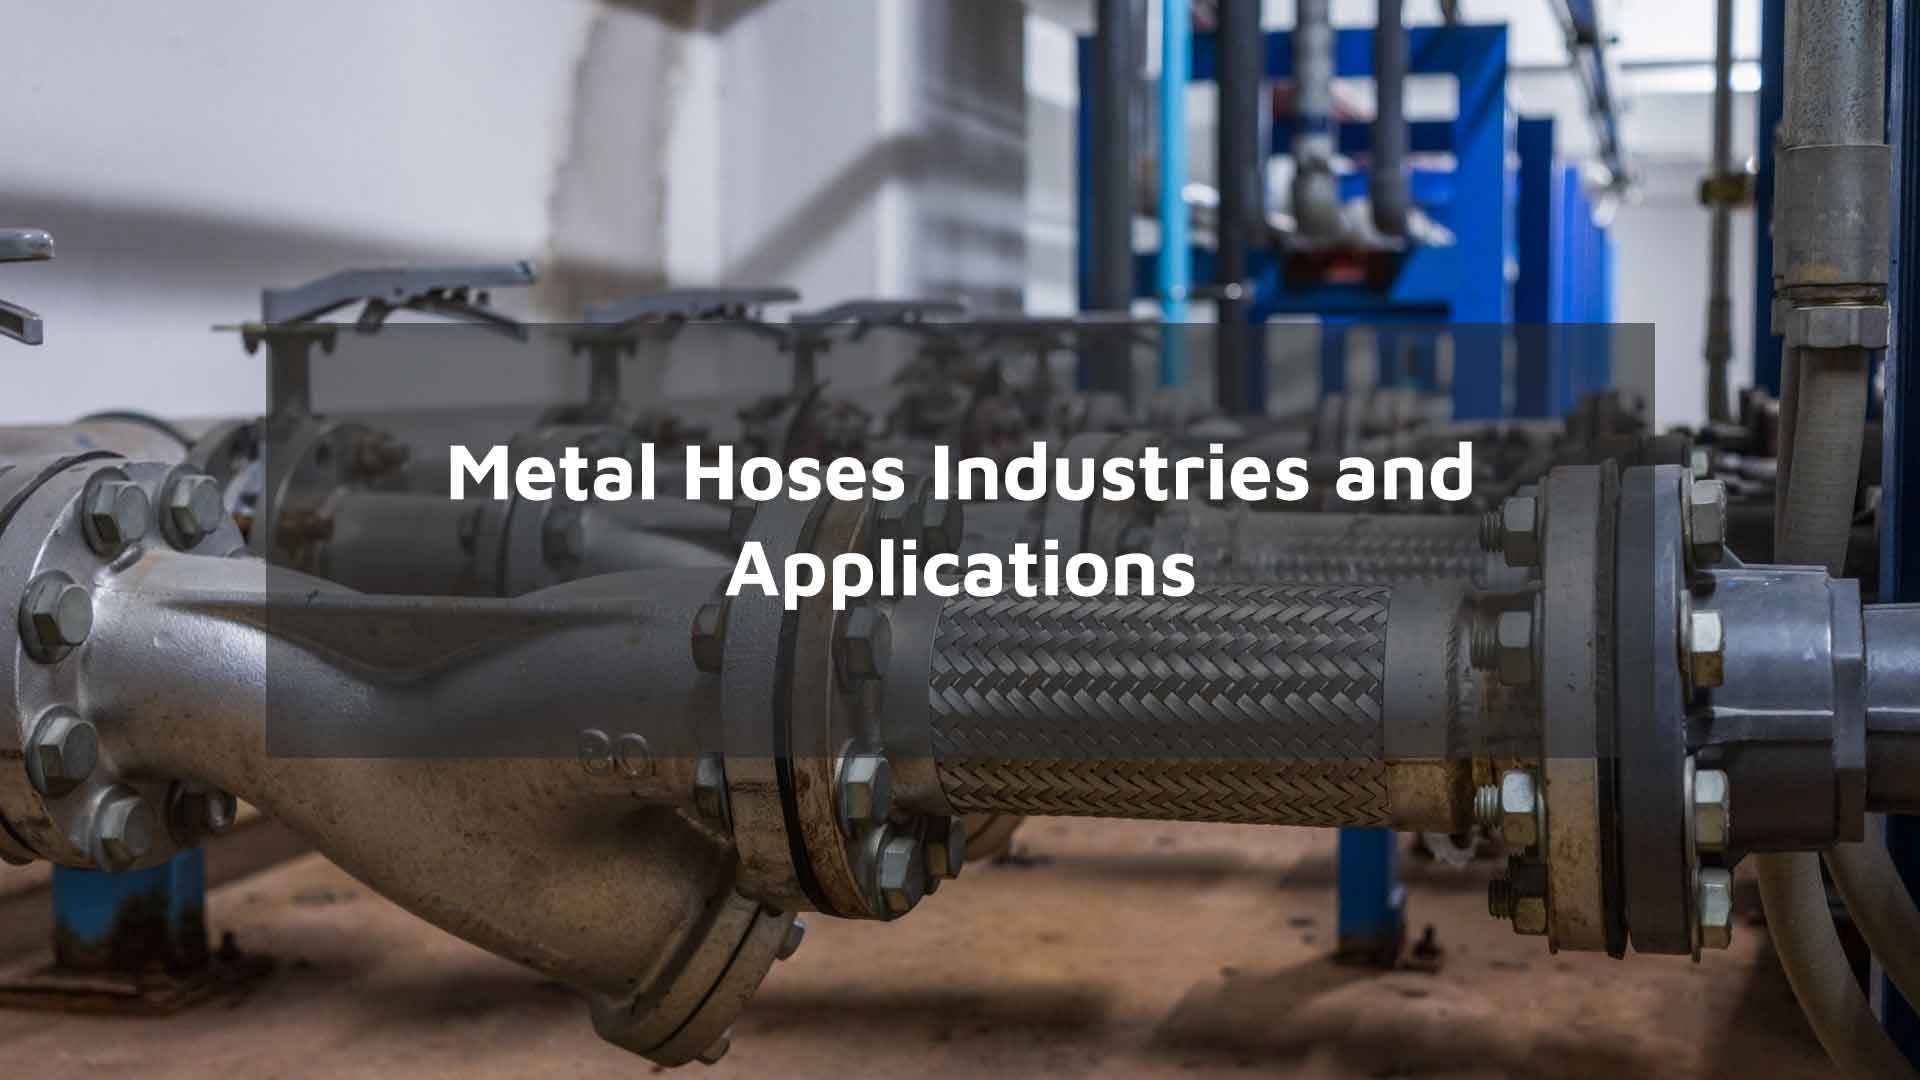 Flexible Metal Hose Supplier in Dubai